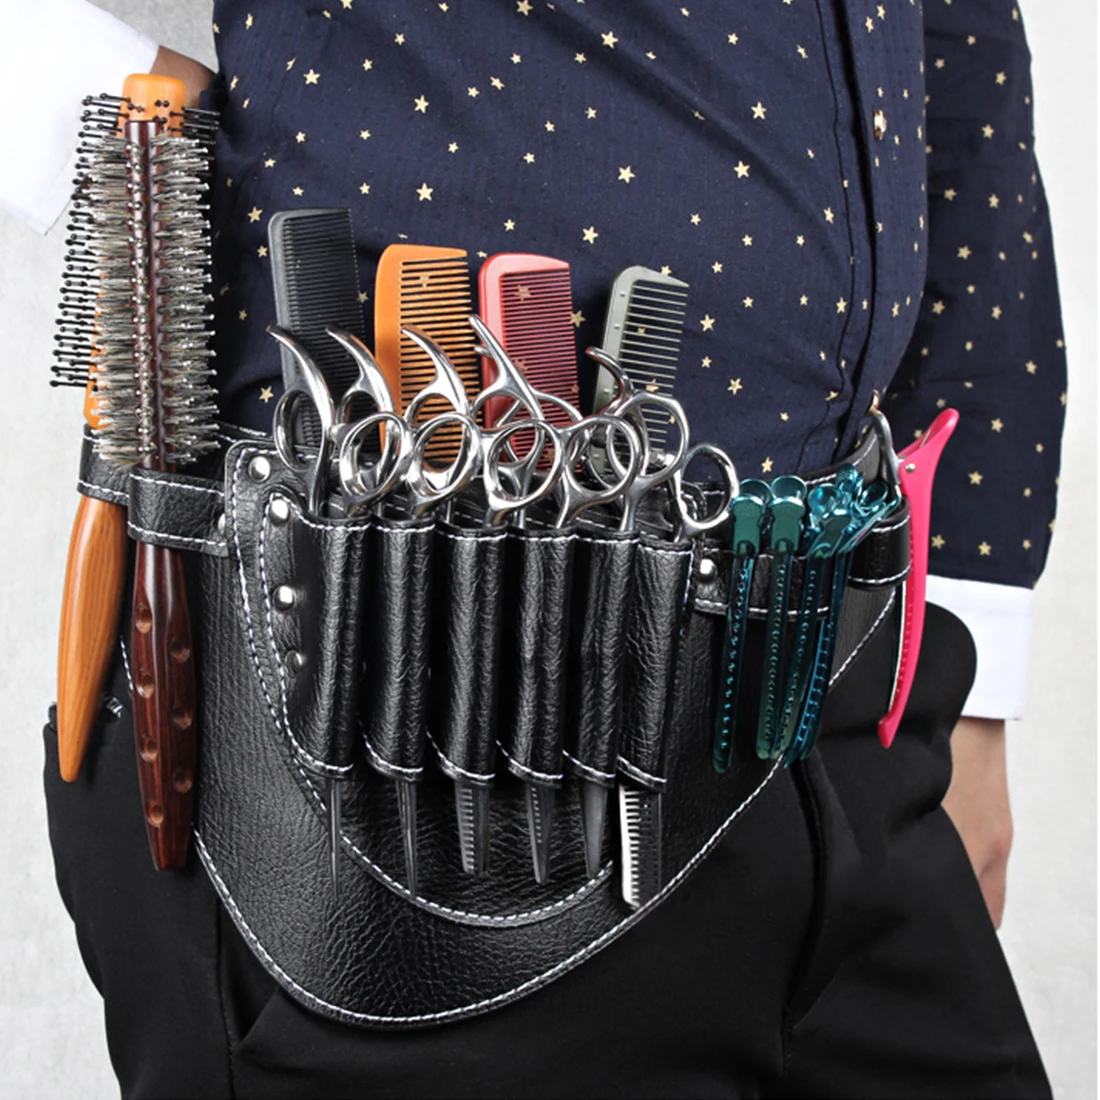 Чехол-сумка с поясным плечевым ремнем кобура для ножниц, зажимы, гребни из искусственной кожи, сумка-держатель для парикмахерской, парикмахерского салона, инструмент